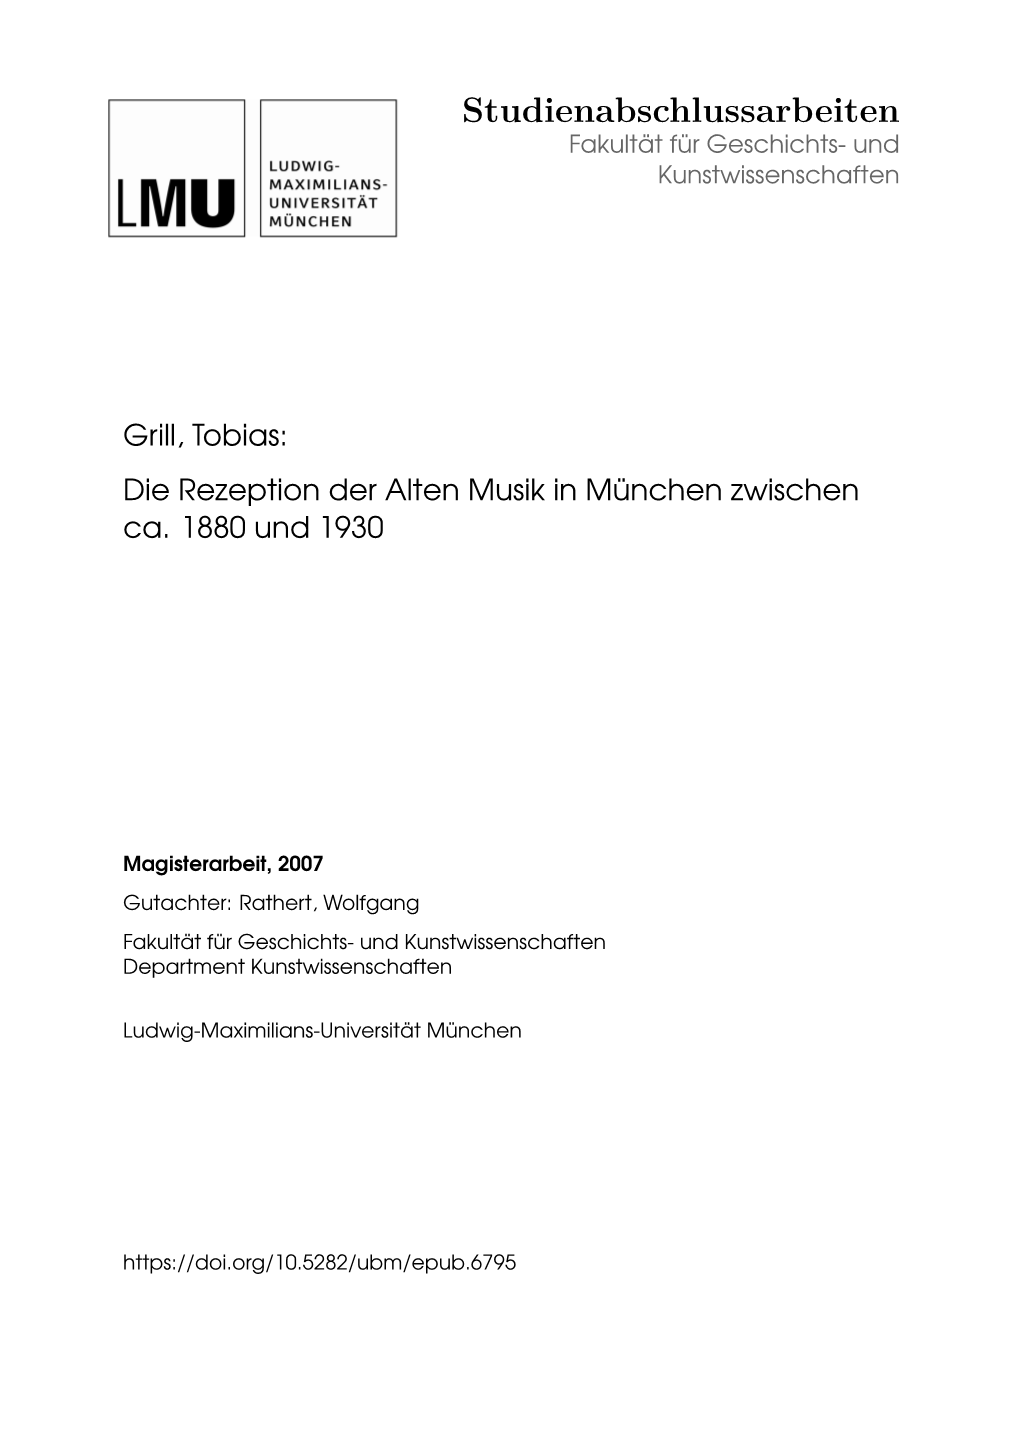 Die Rezeption Der Alten Musik in München Zwischen Ca